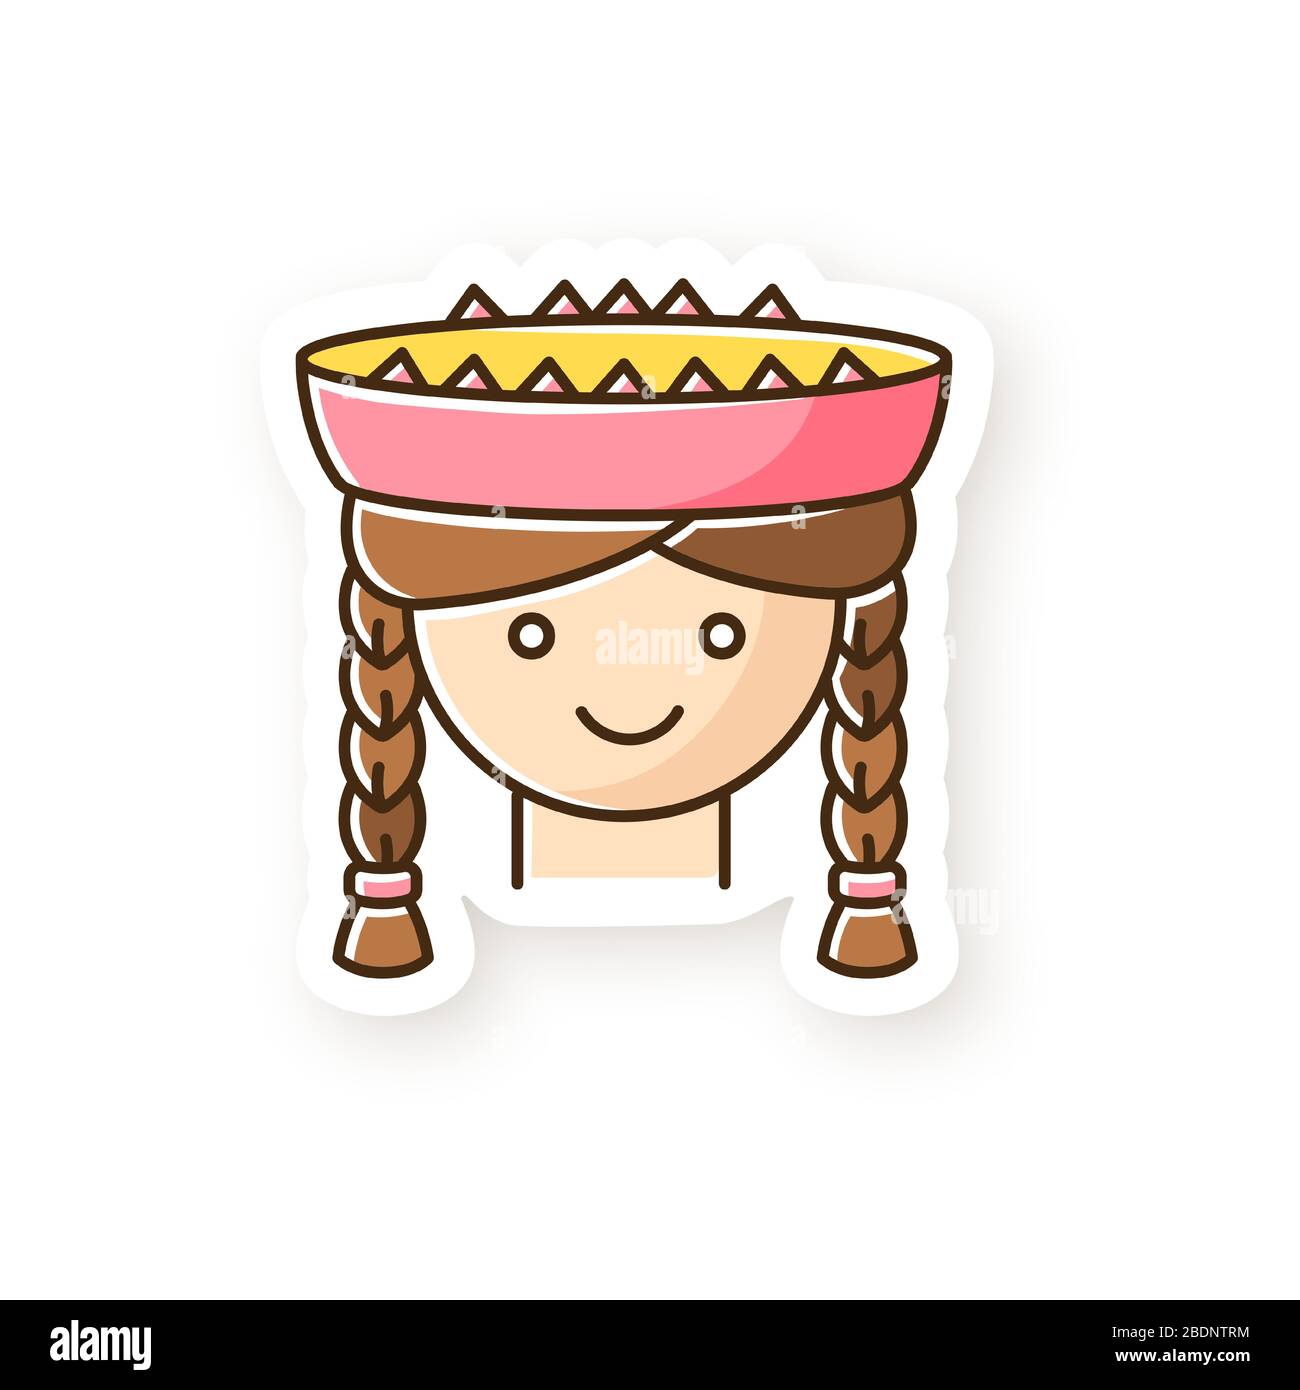 Patch de fille péruvienne. Jolie tête de femme souriante avec des tresses. Jeune femme dans un chapeau traditionnel. L'adresse nationale de l'amérique latine. Enfant local du Pérou. RVB Illustration de Vecteur